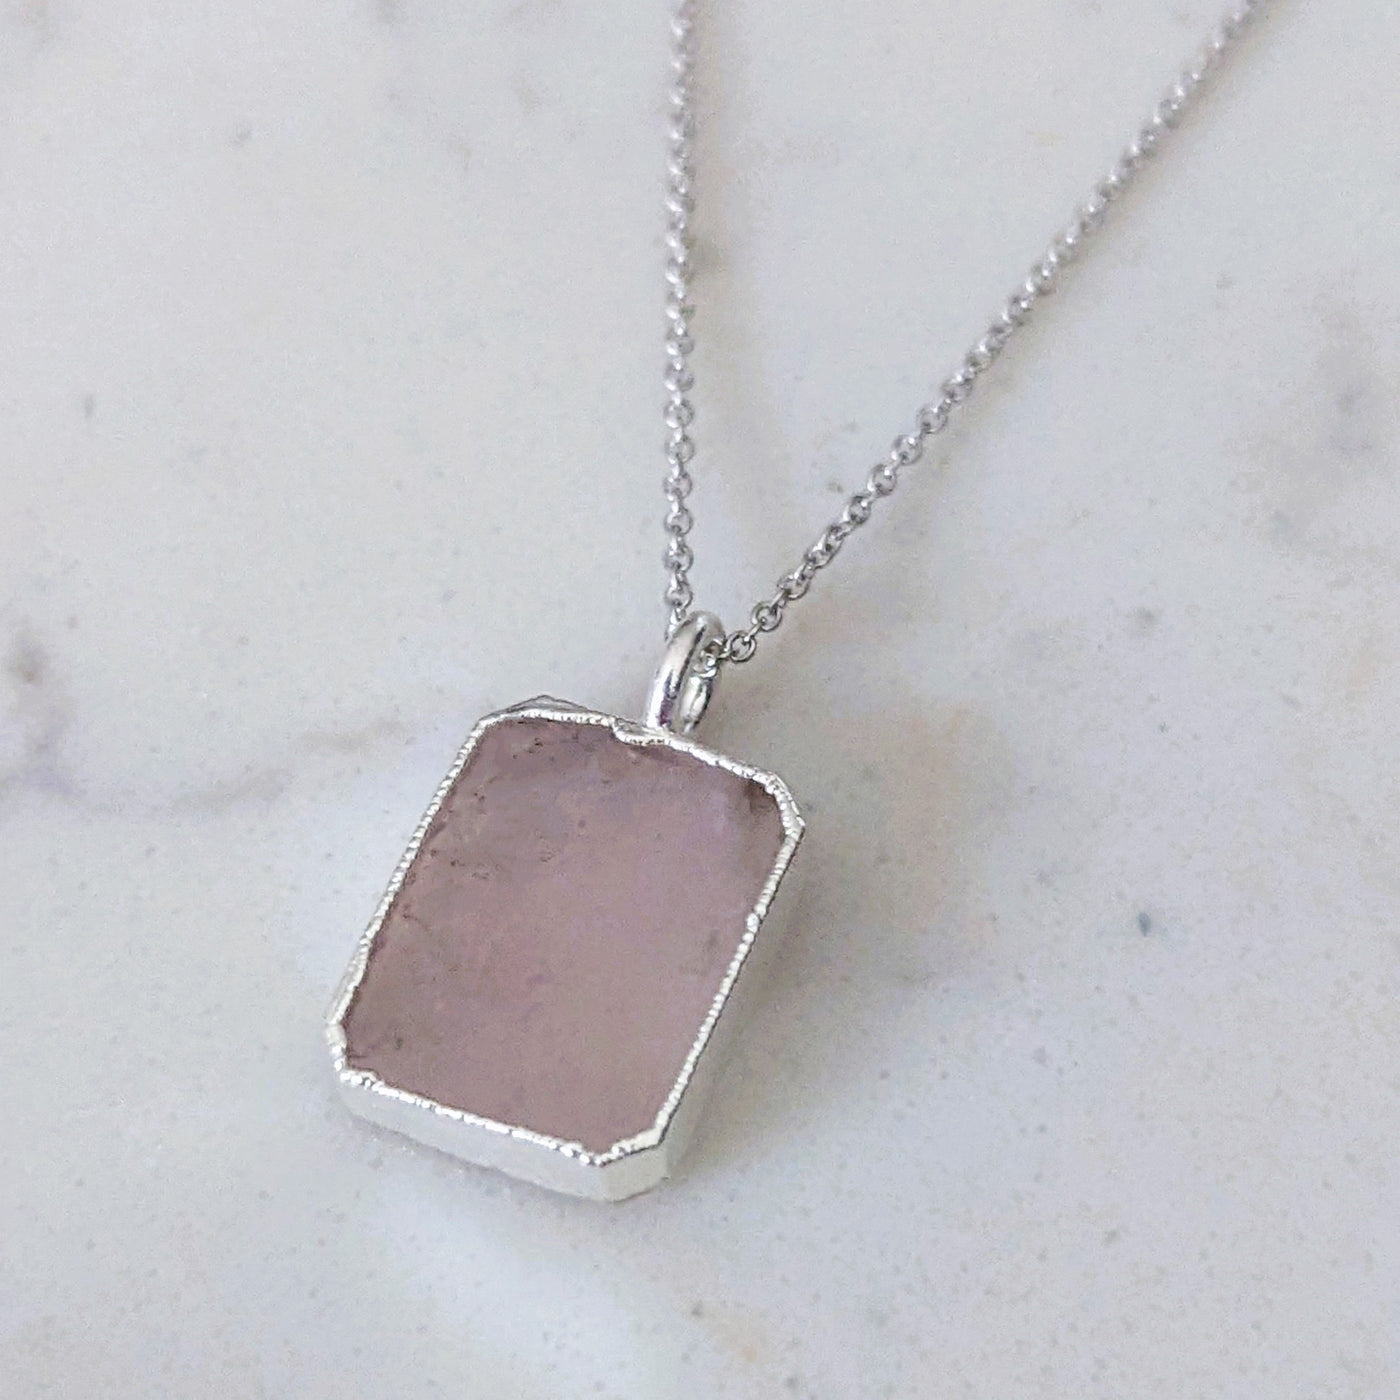 silver rose quartz rectangular pendant necklace